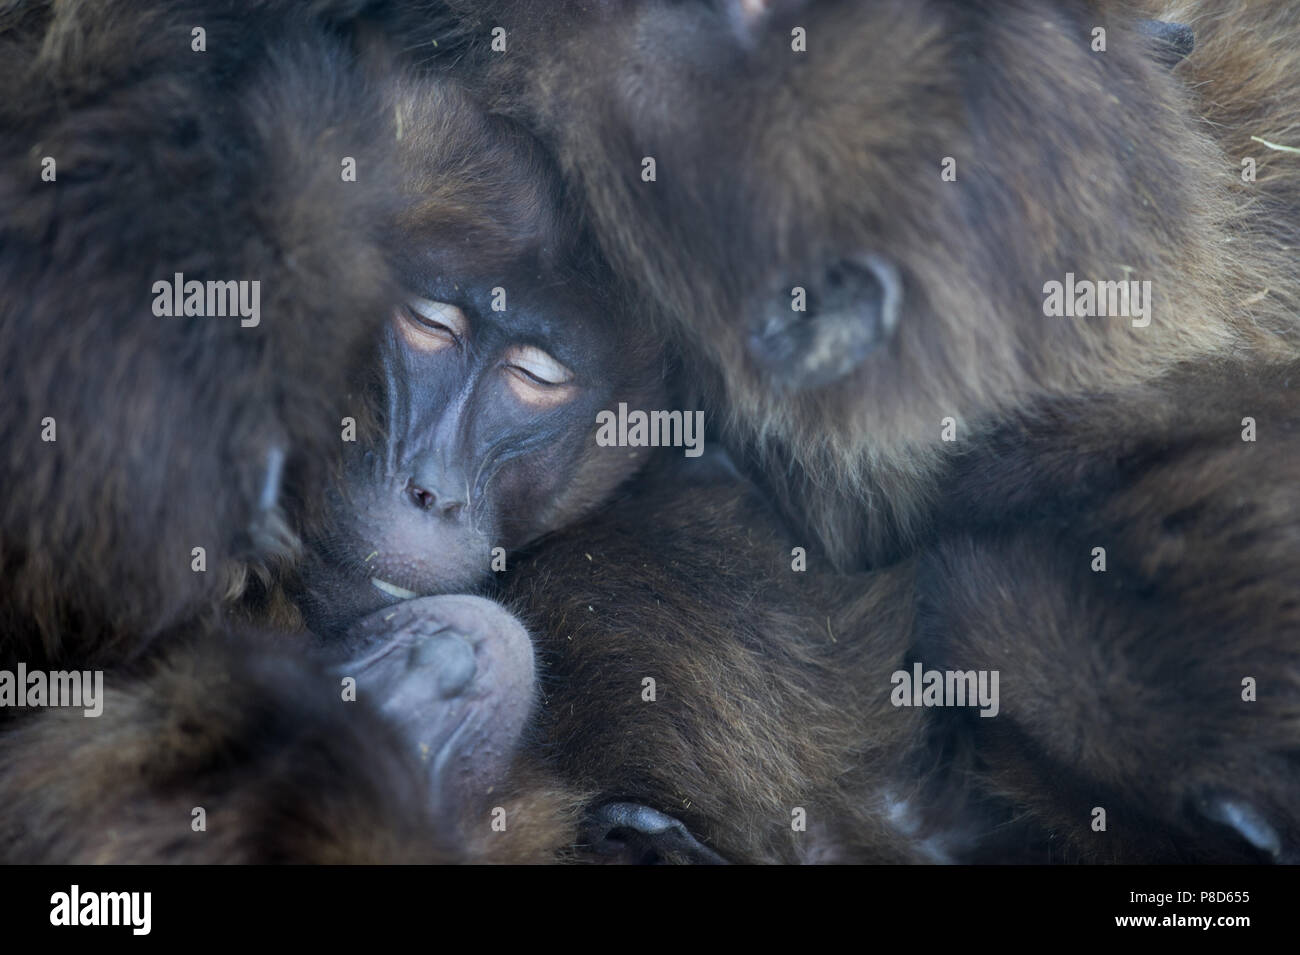 Les babouins gélada d'Éthiopie dormir ensemble en action Banque D'Images